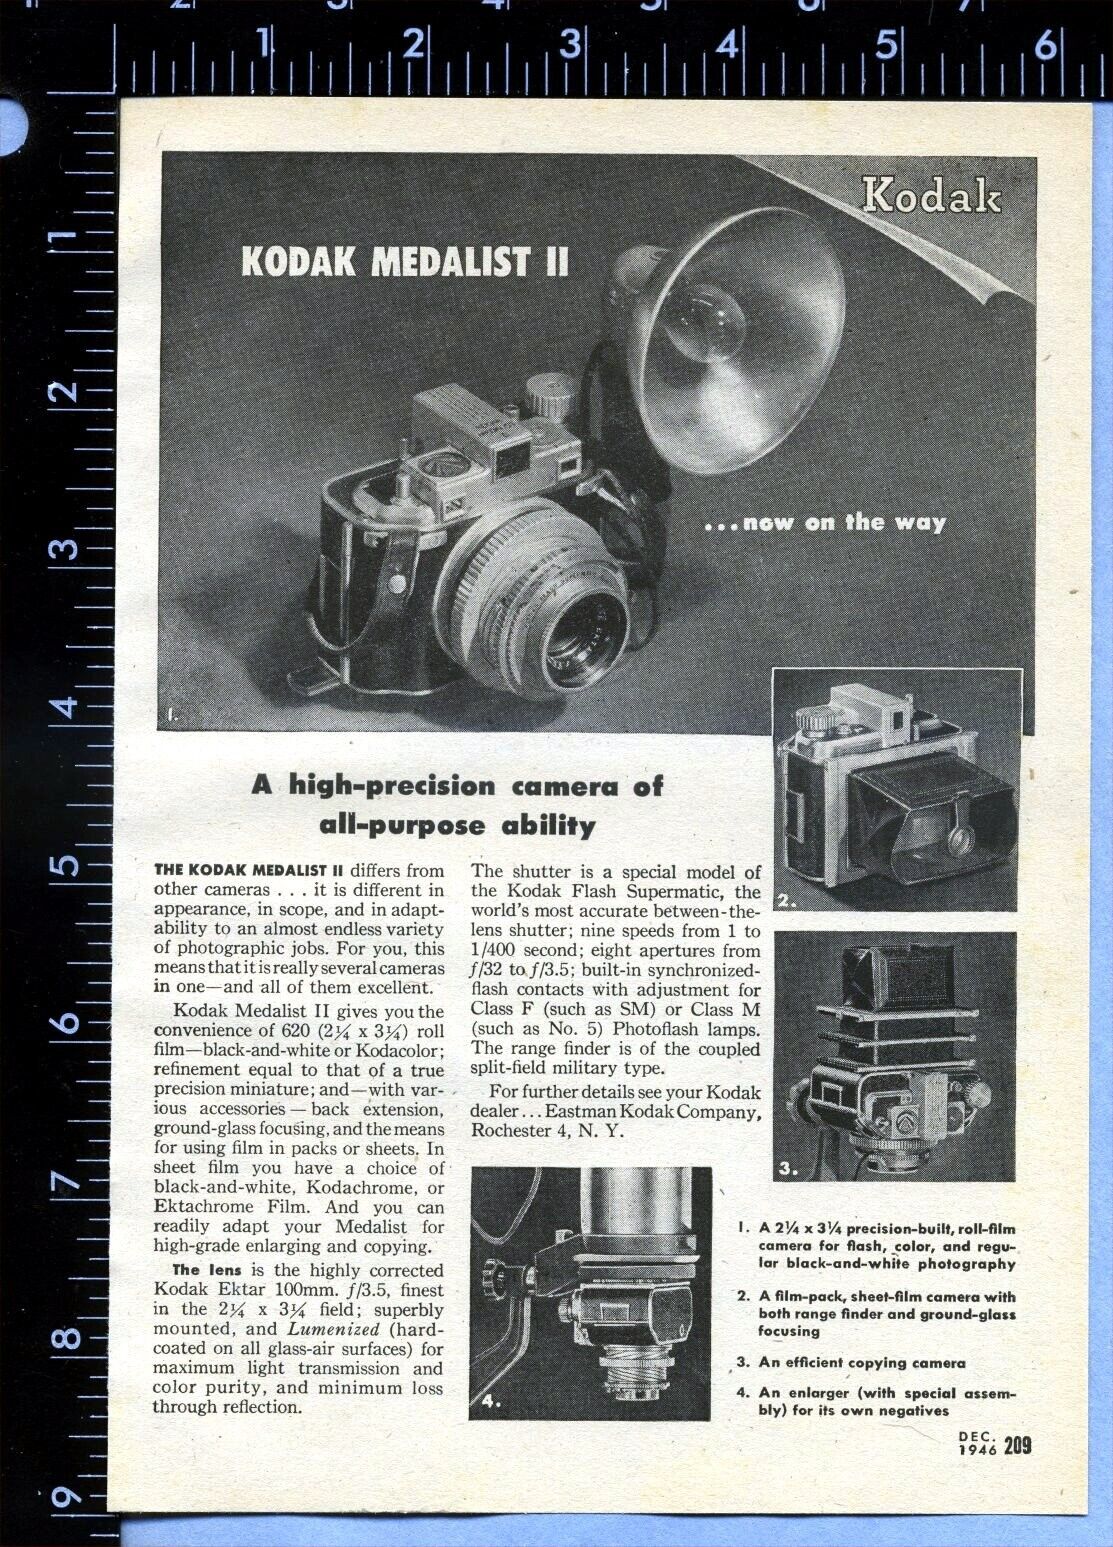 1946 Vintage Magazine Page Ad Kodak Medalist II Camera